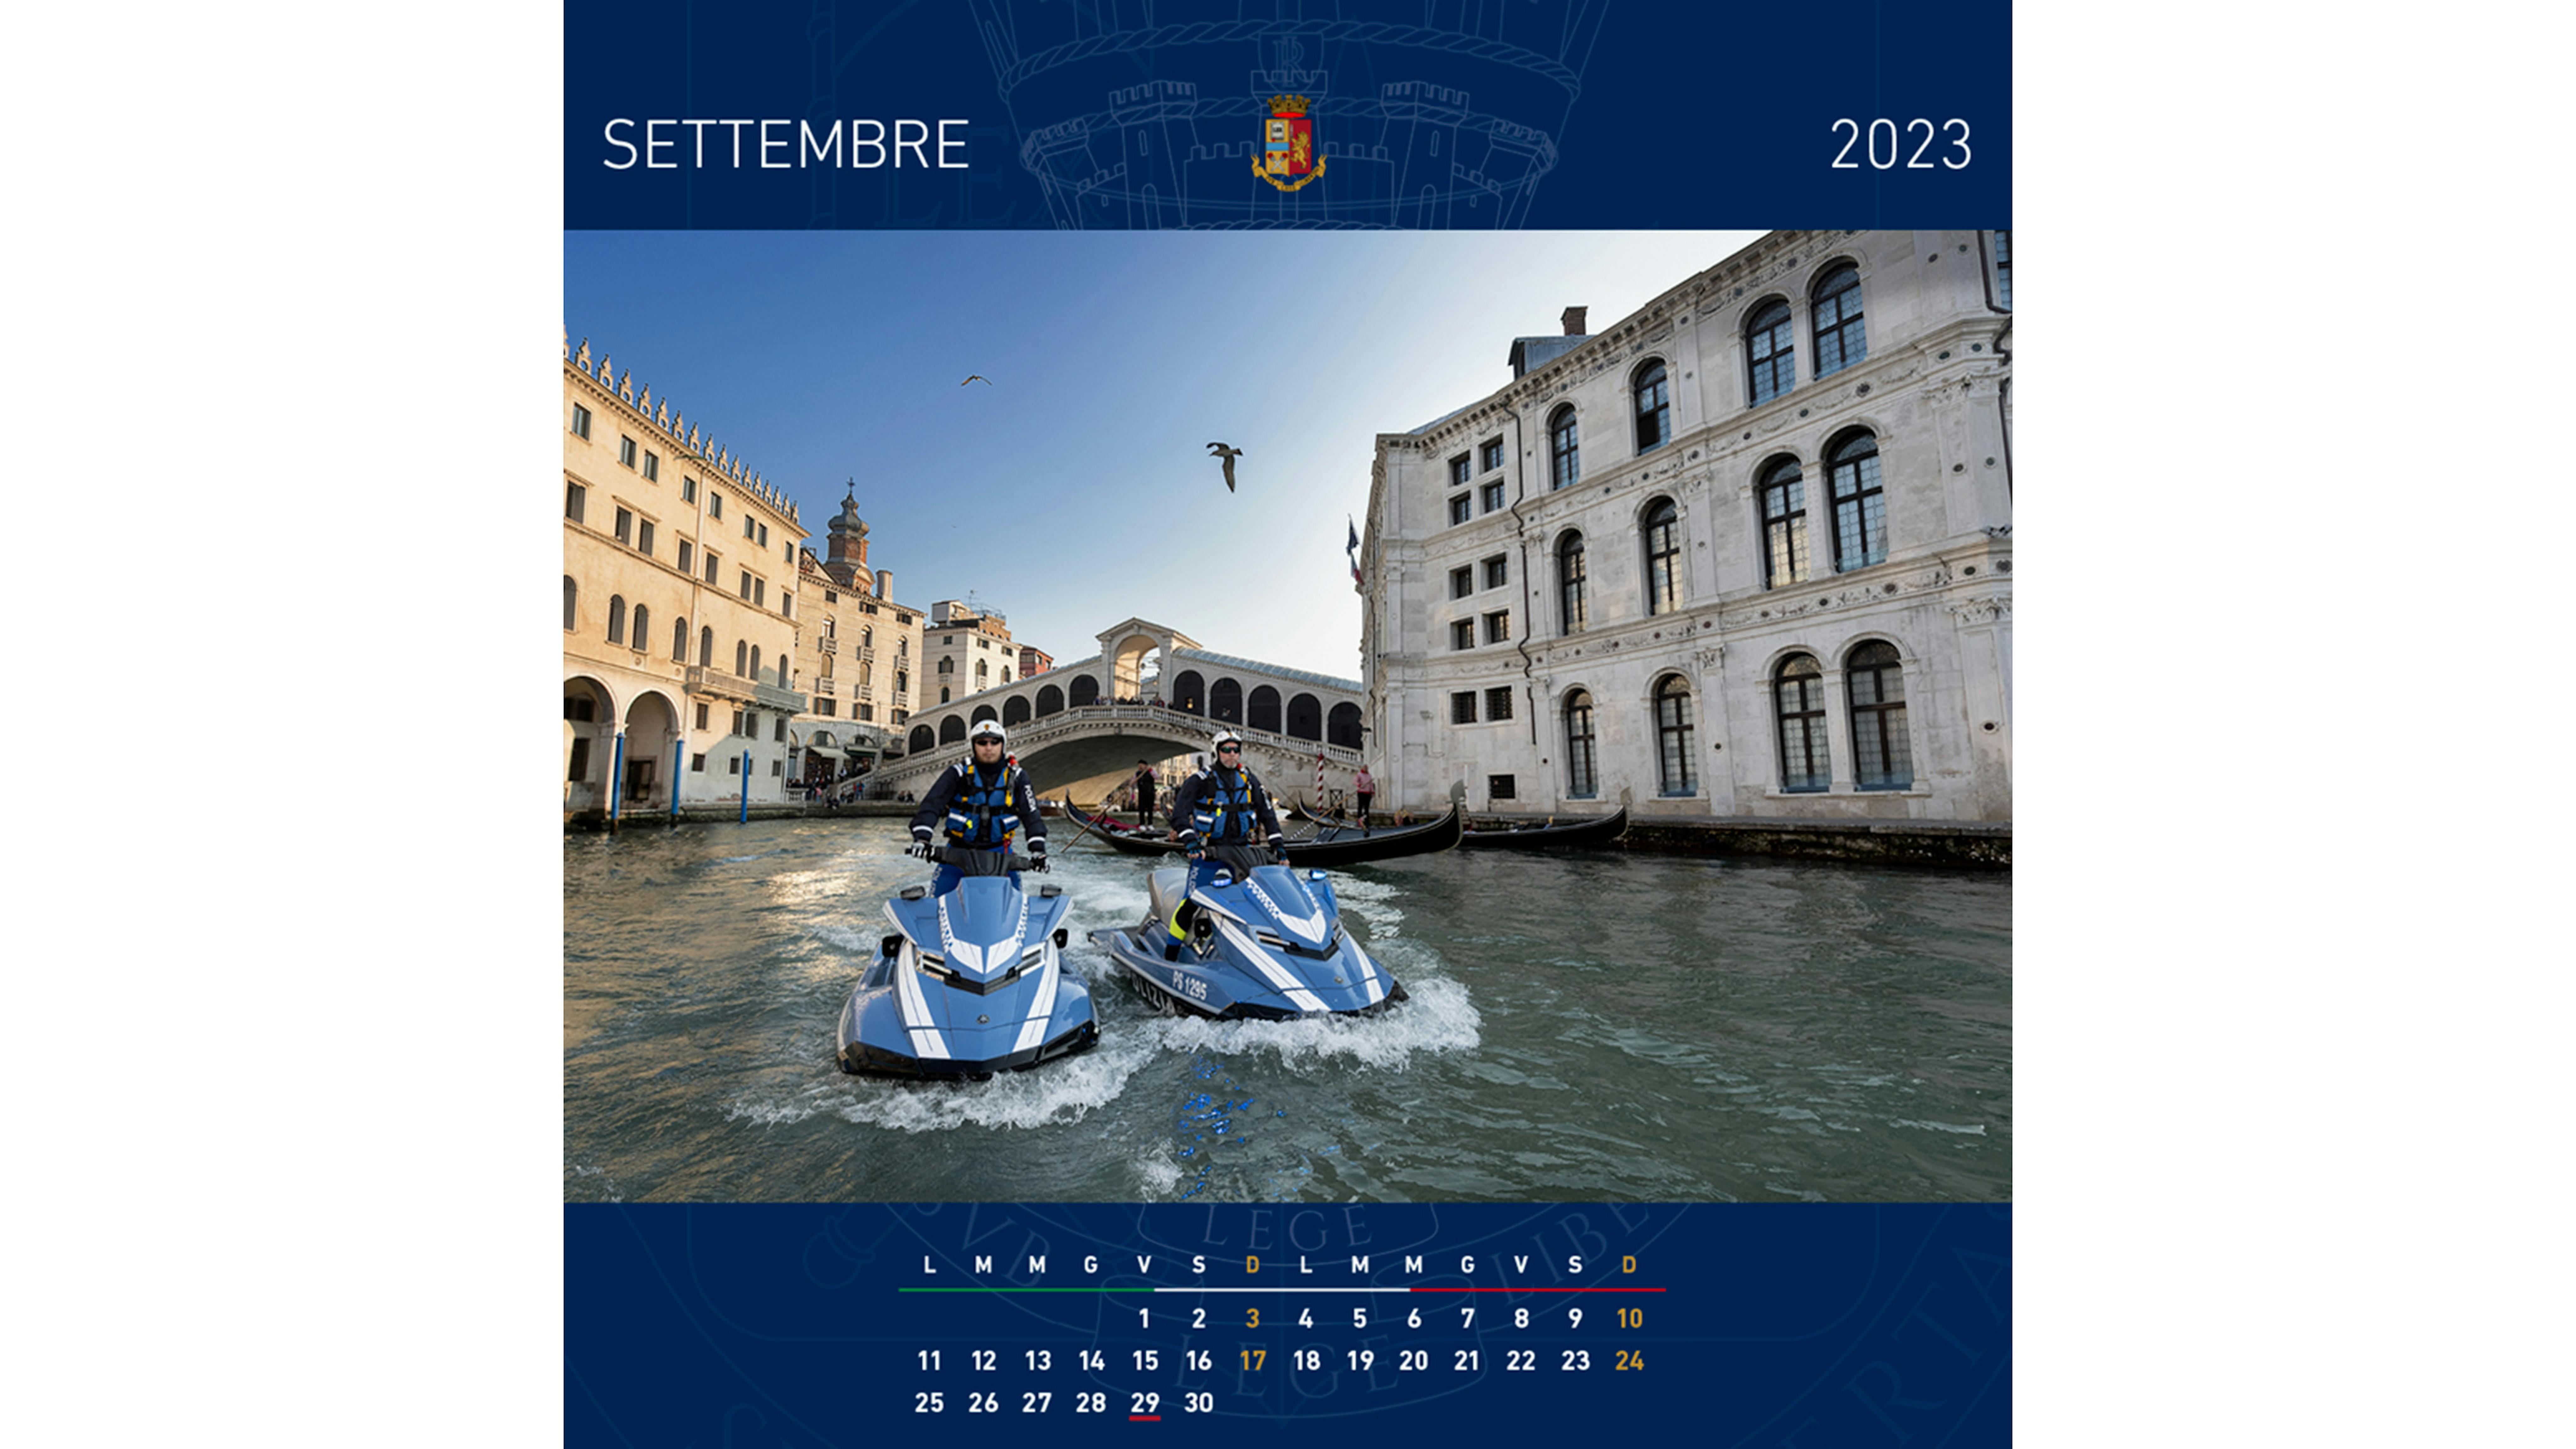 anteprima calendario polizia 2023 settembre